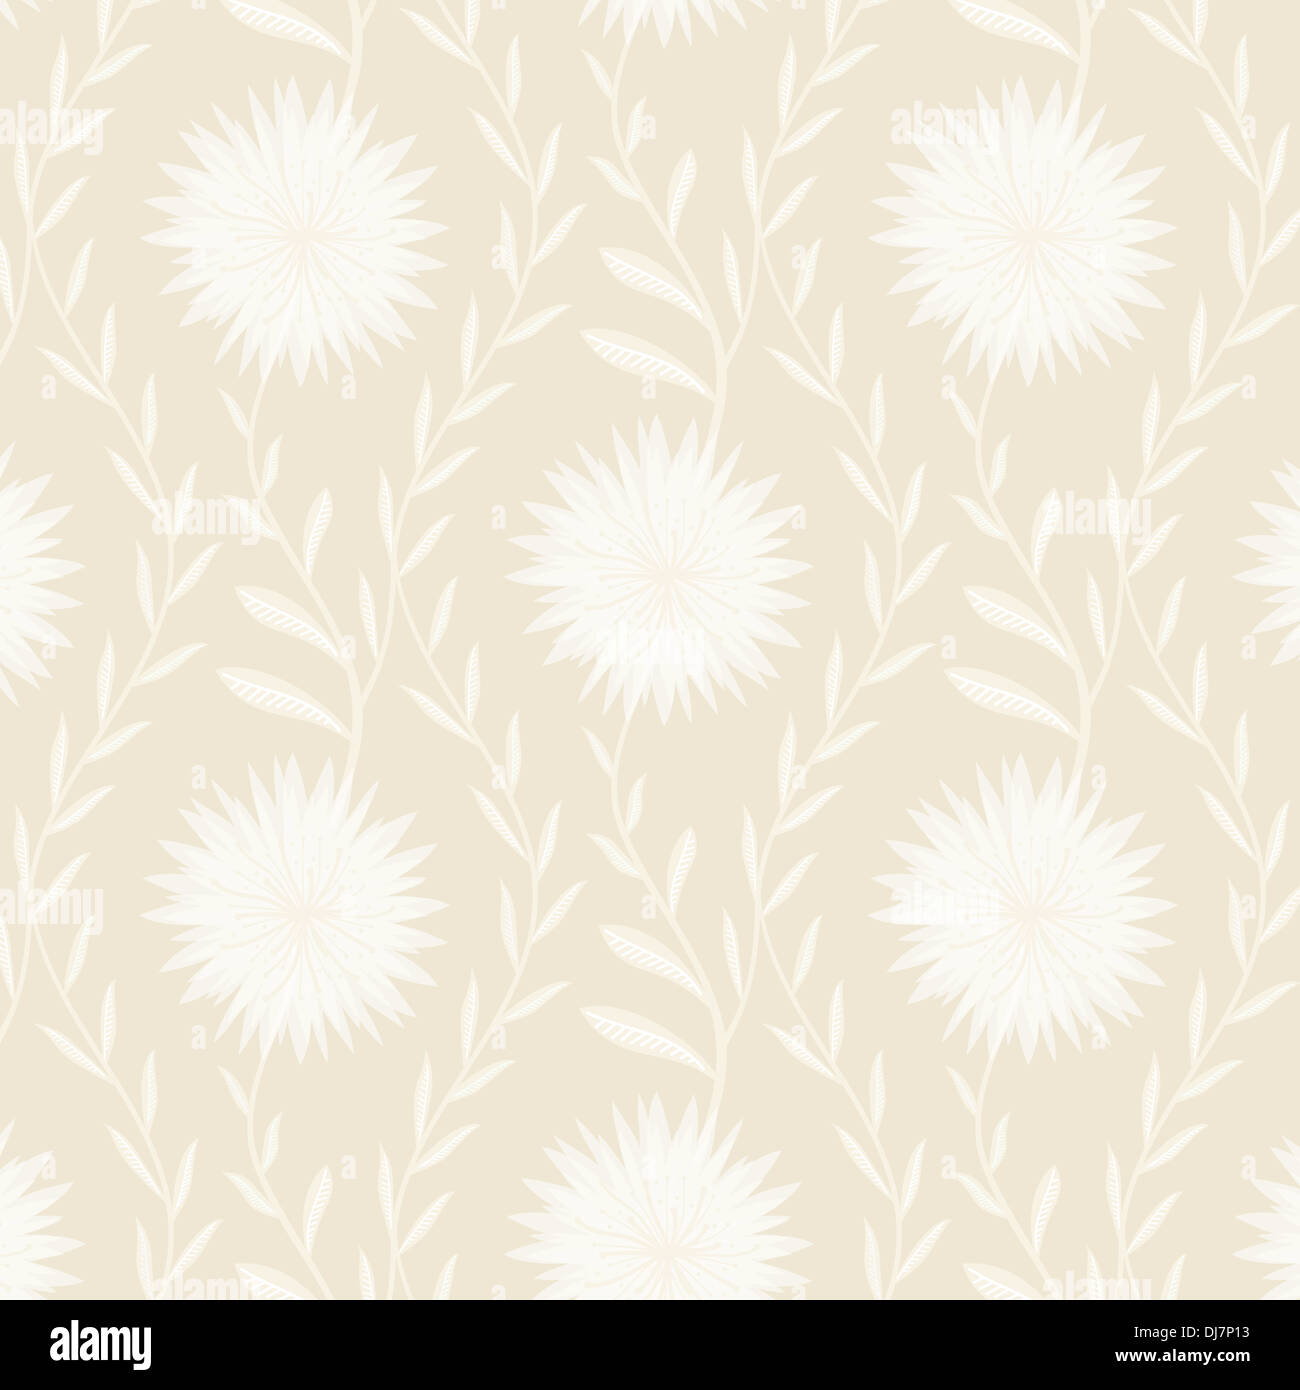 Tender White Flower Pattern on Light Background Stock Photo